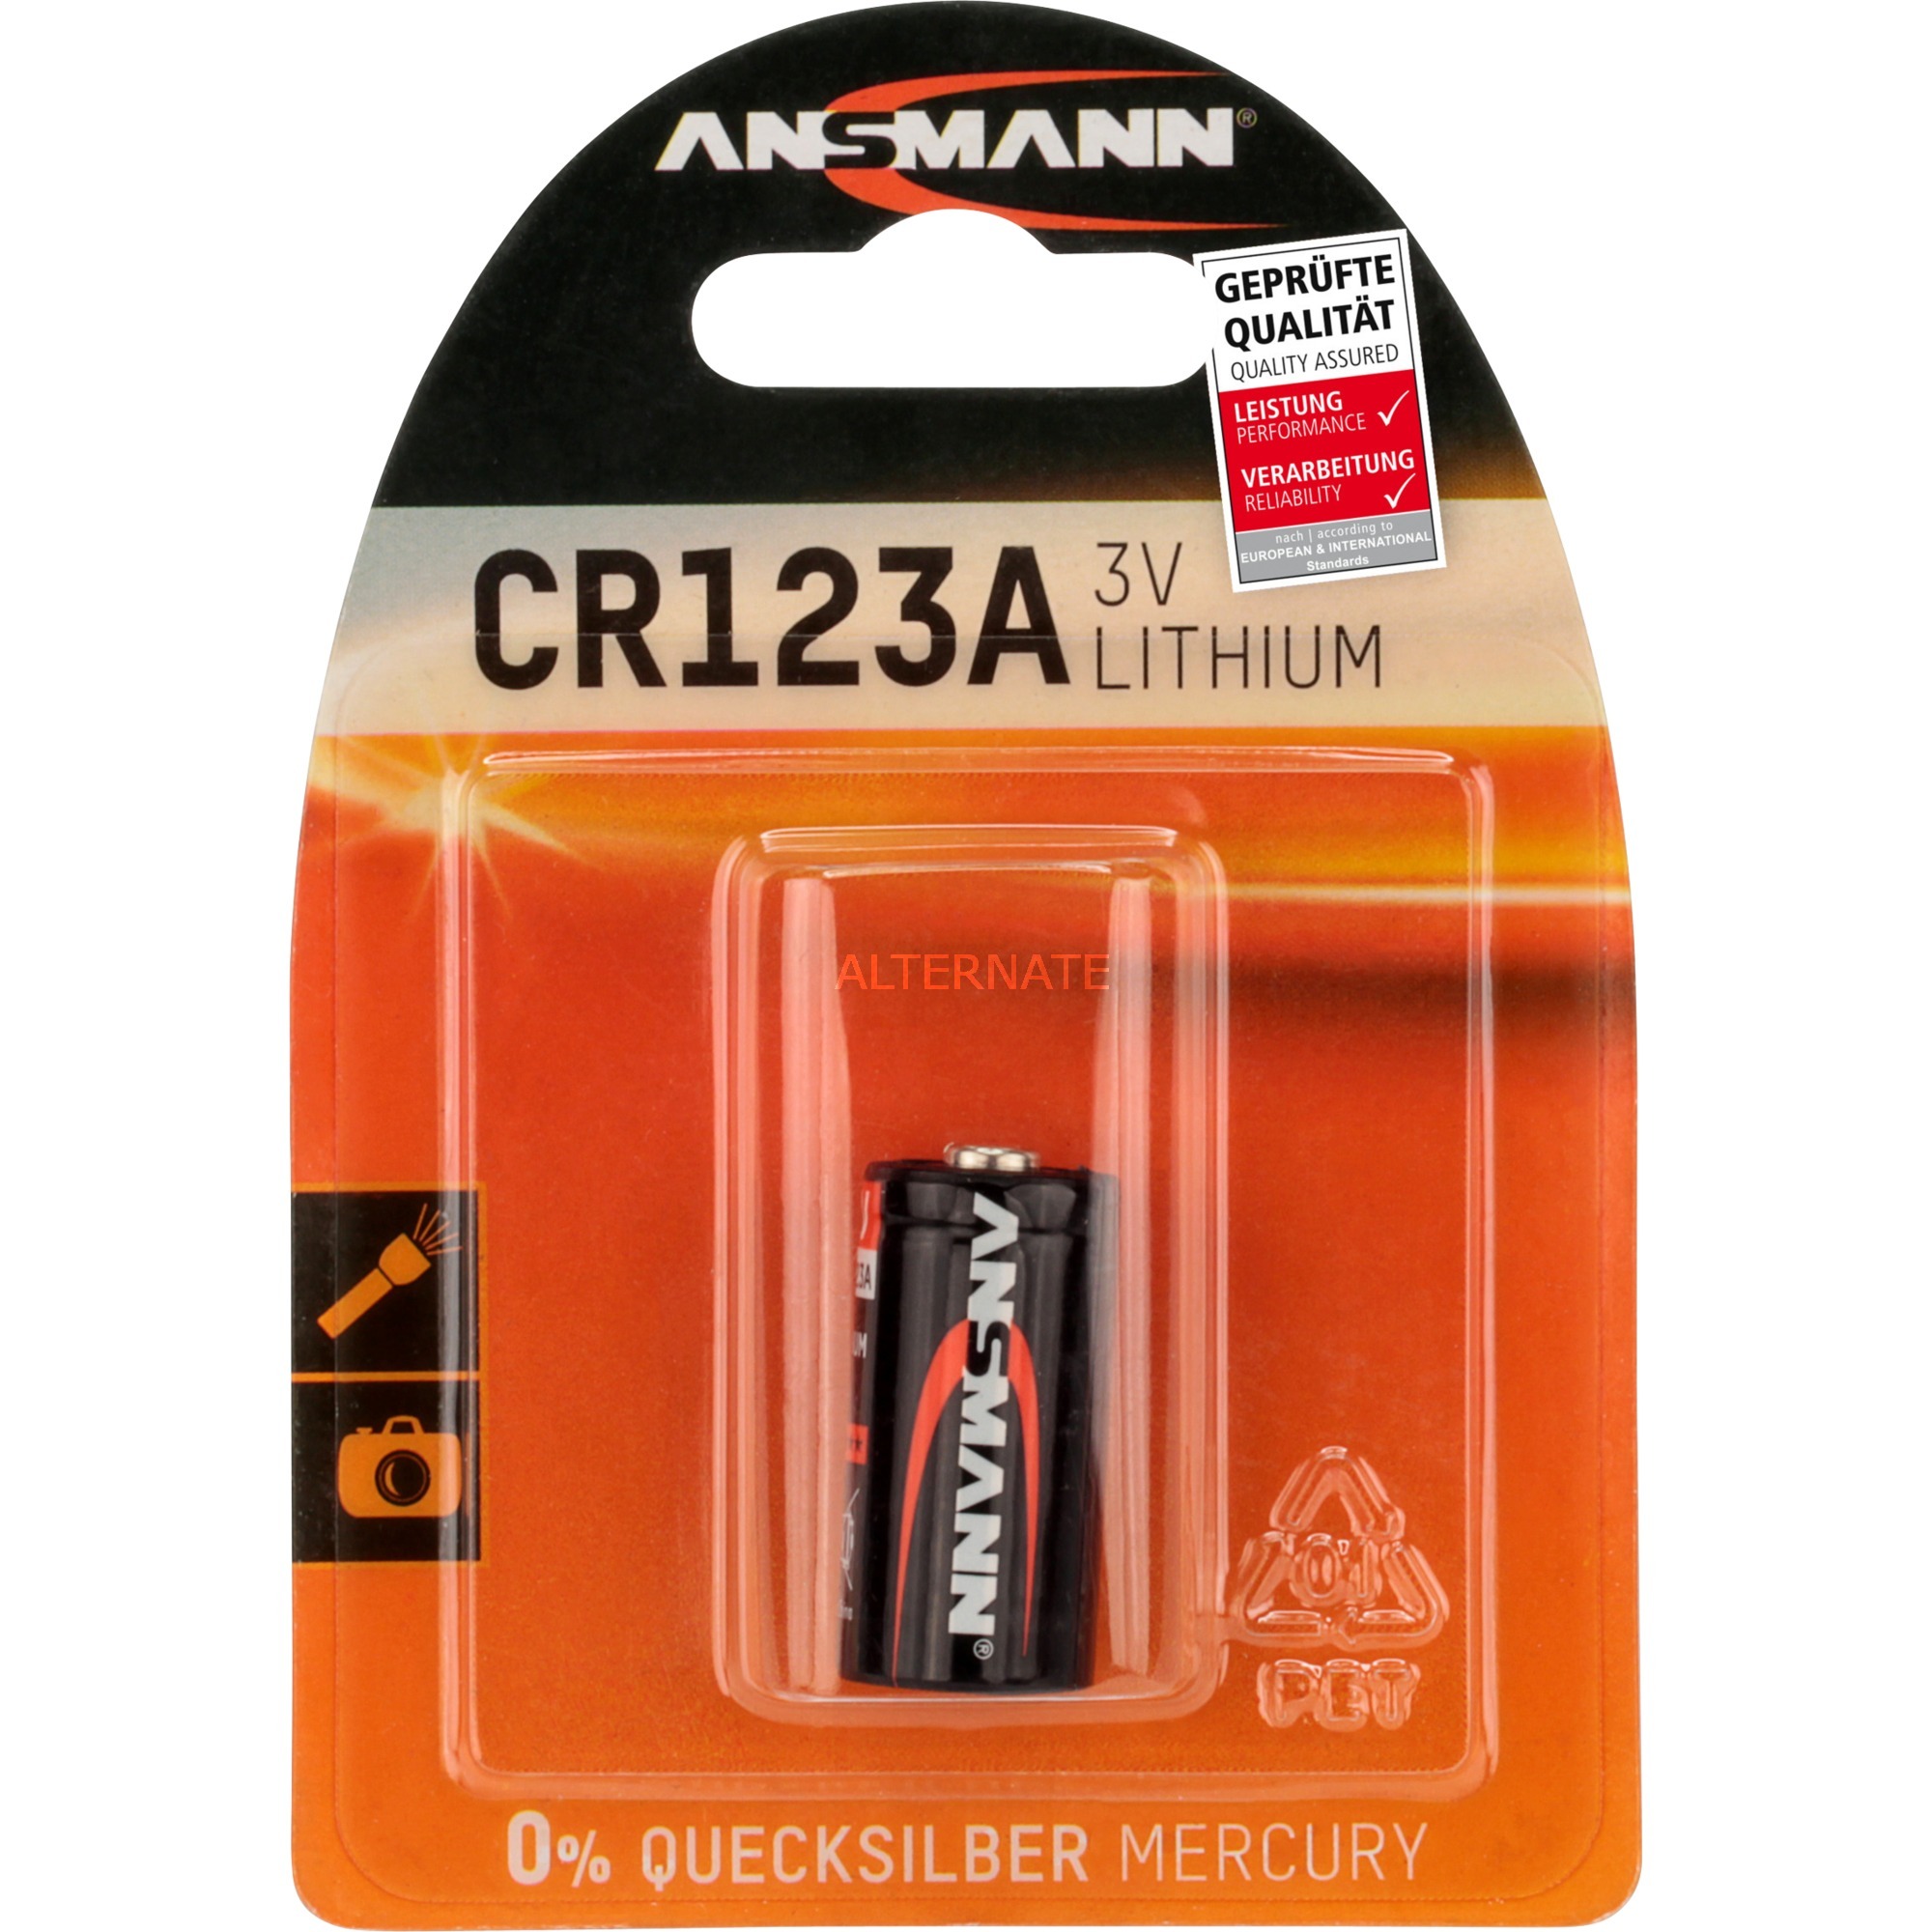 Image of Alternate - Lithium Batterie CR123A/CR17335 online einkaufen bei Alternate